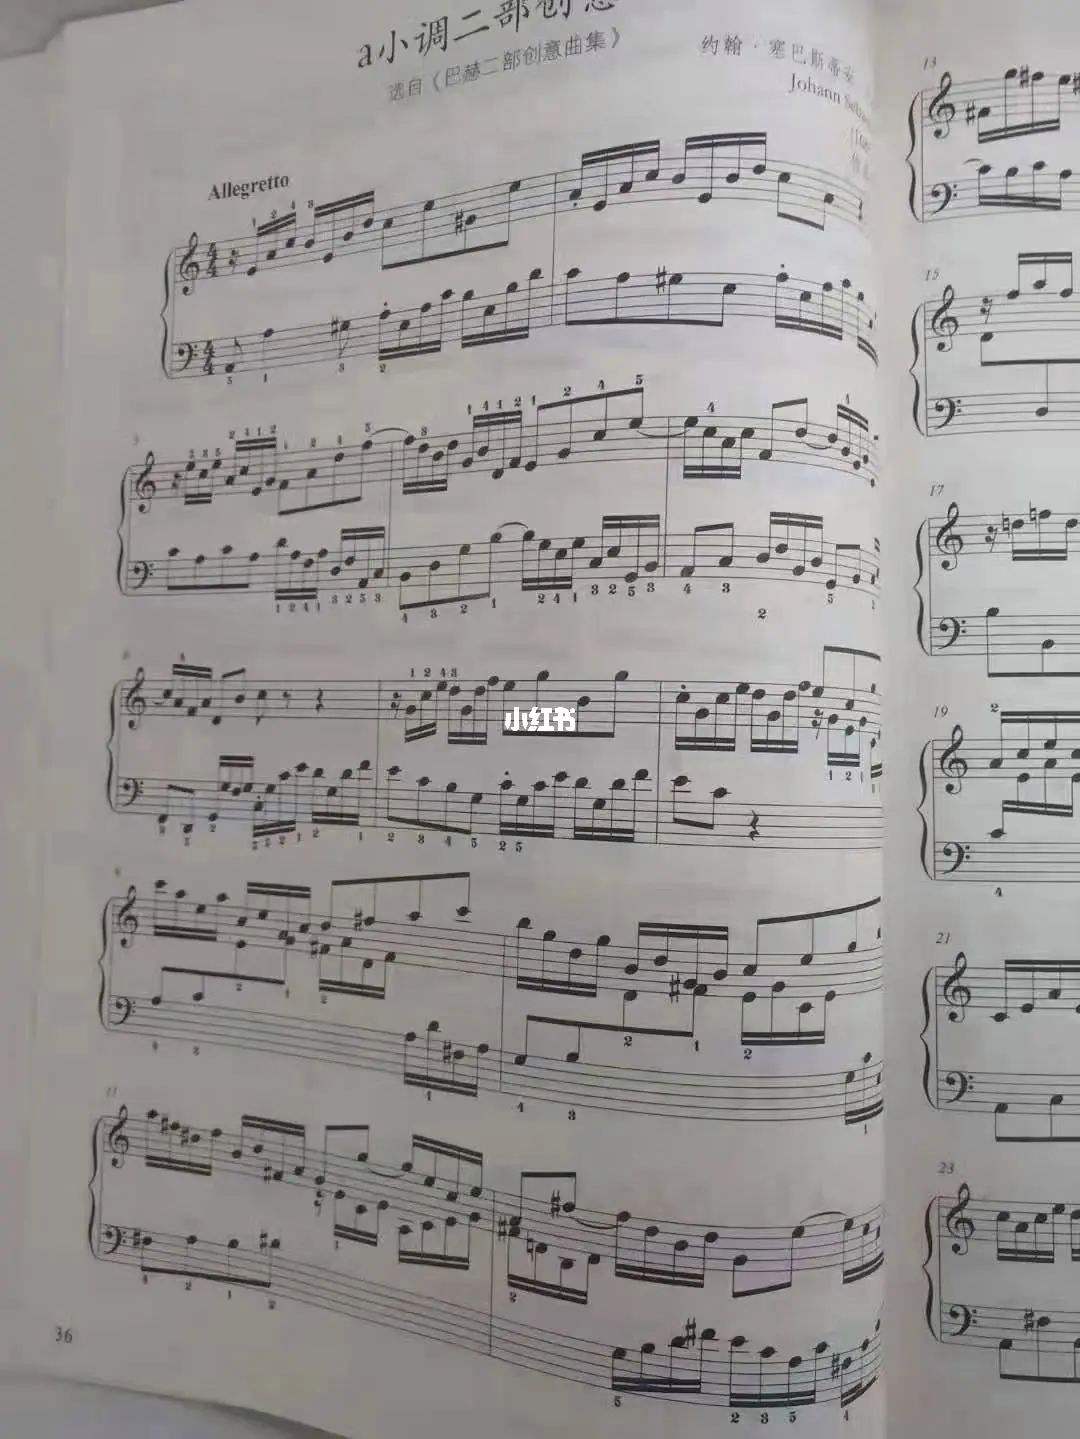 中国钢琴考级十级曲目(中国院十级钢琴考级曲目)